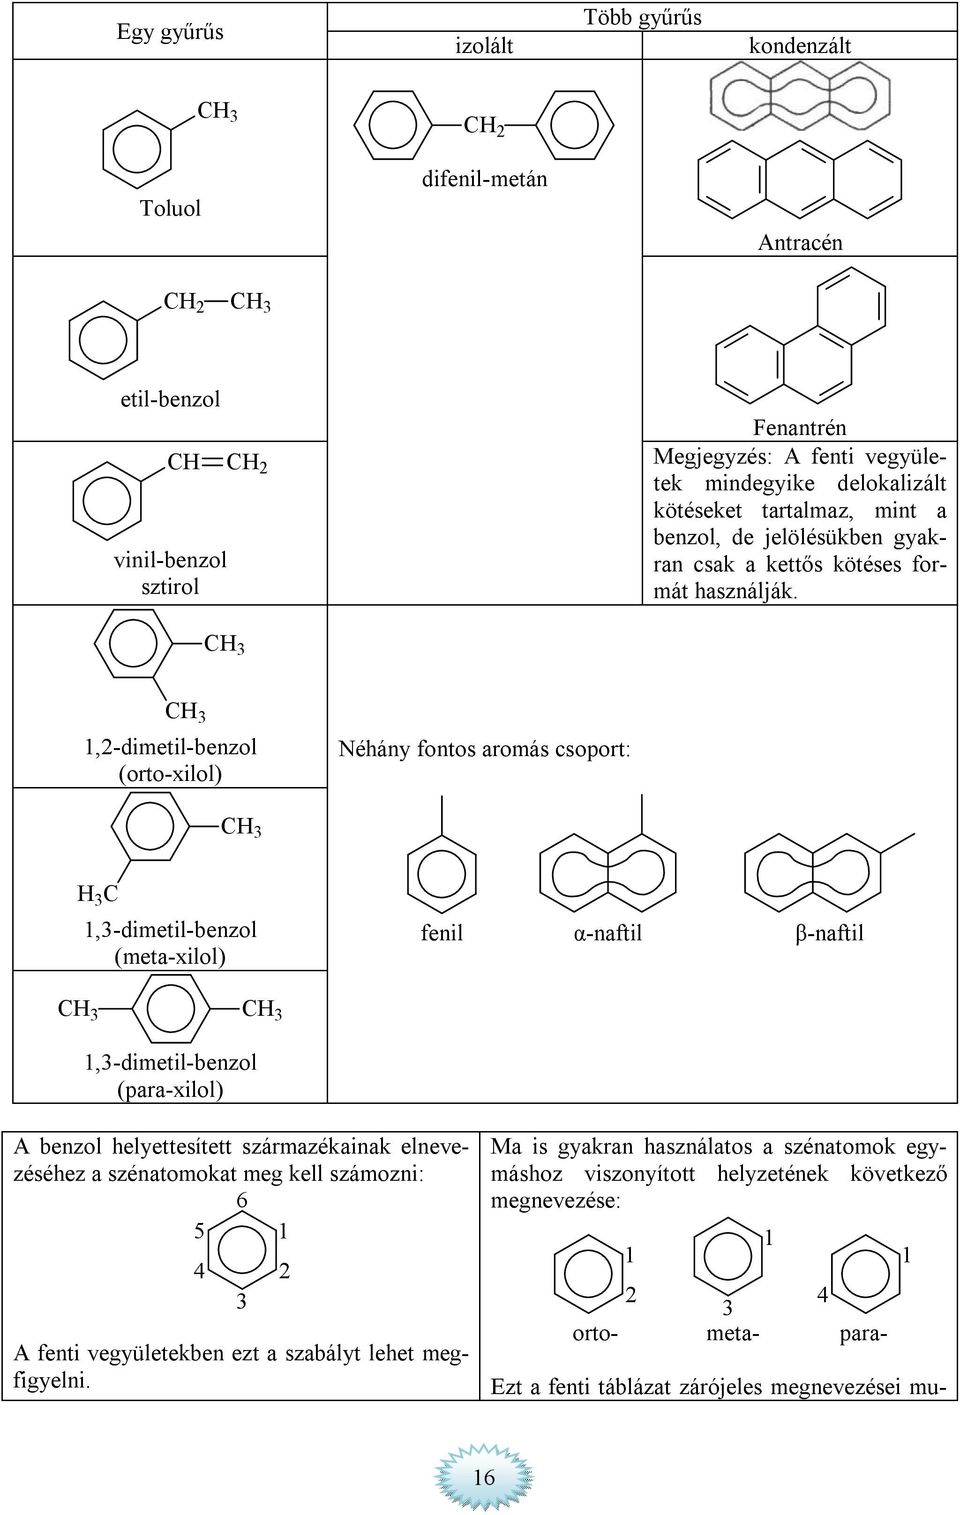 3 3 1,2-dimetil-benzol (orto-xilol) Néhány fontos aromás csoport: 3 3 1,3-dimetil-benzol (meta-xilol) fenil α-naftil β-naftil 3 3 1,3-dimetil-benzol (para-xilol) A benzol helyettesített